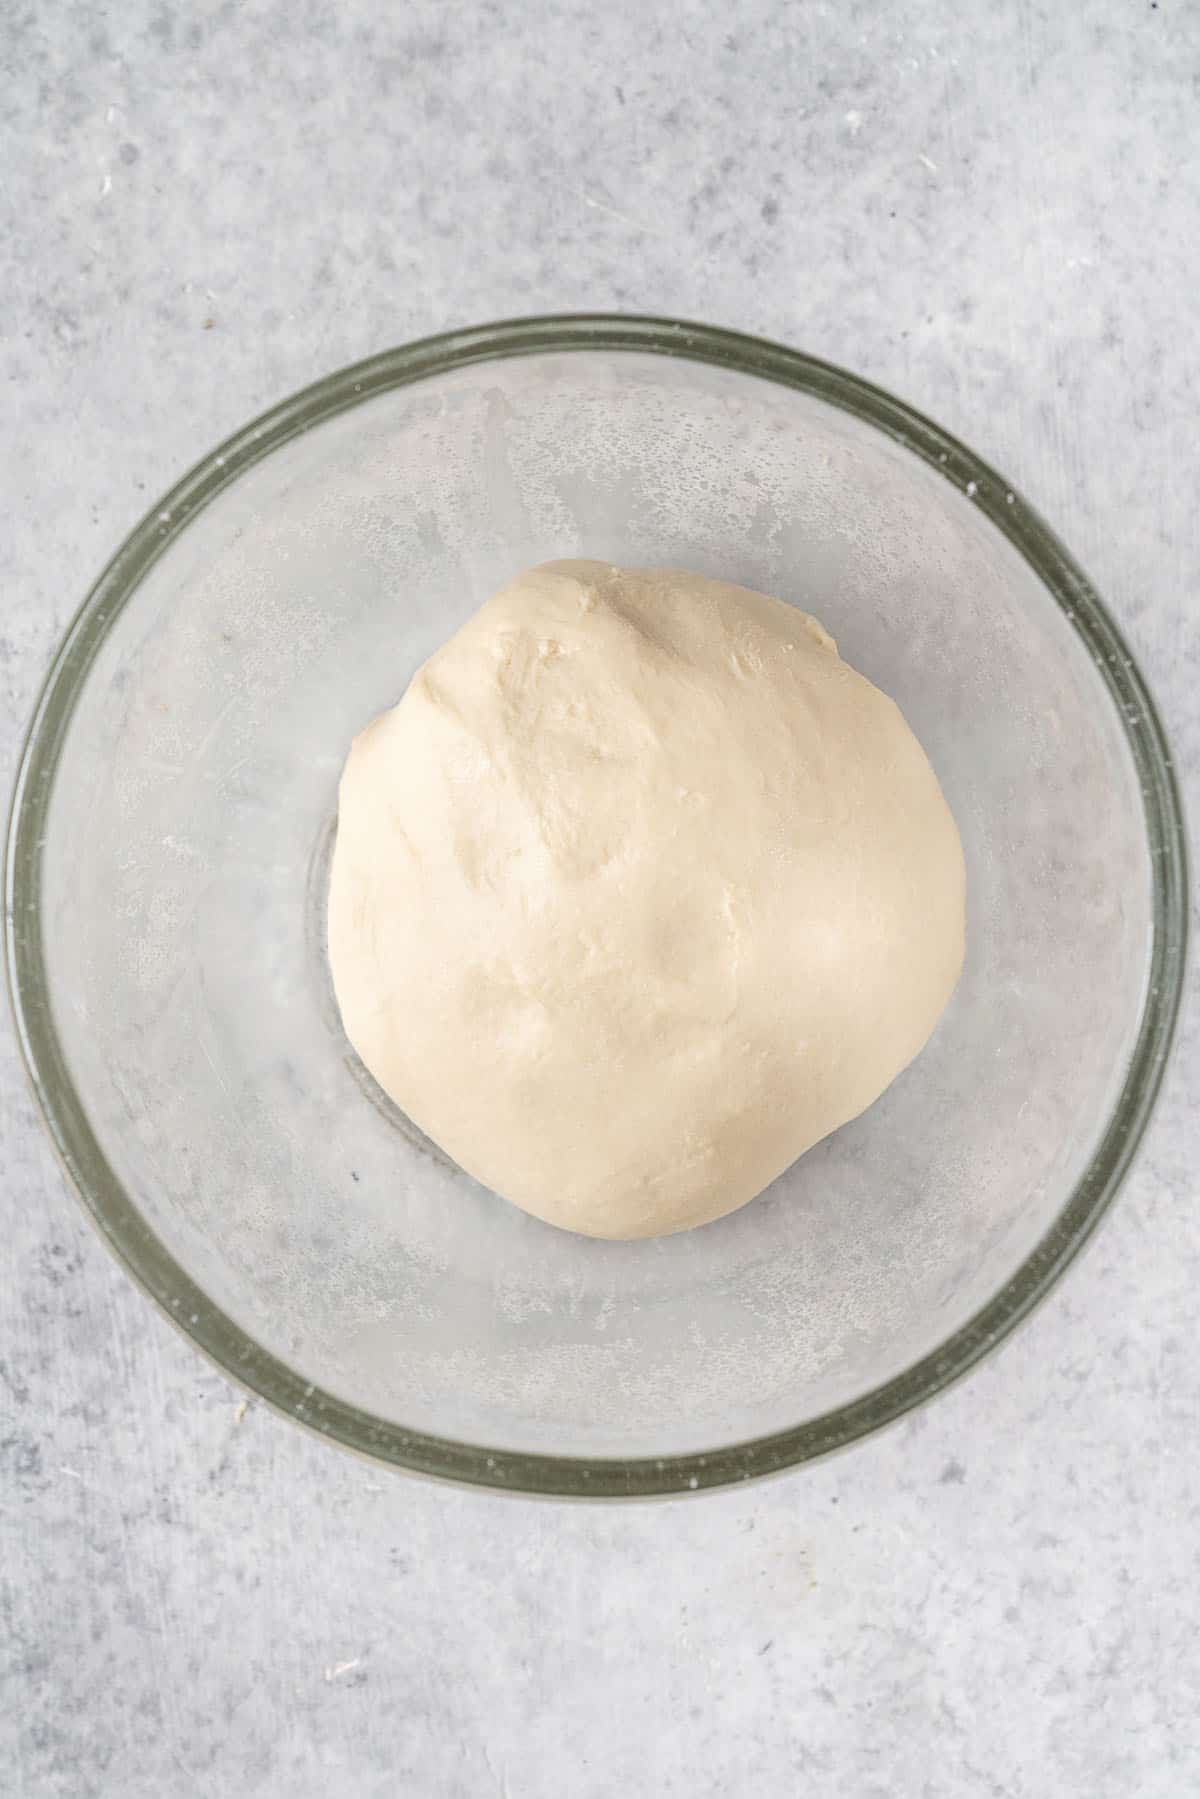 pita bread dough in glass bowl